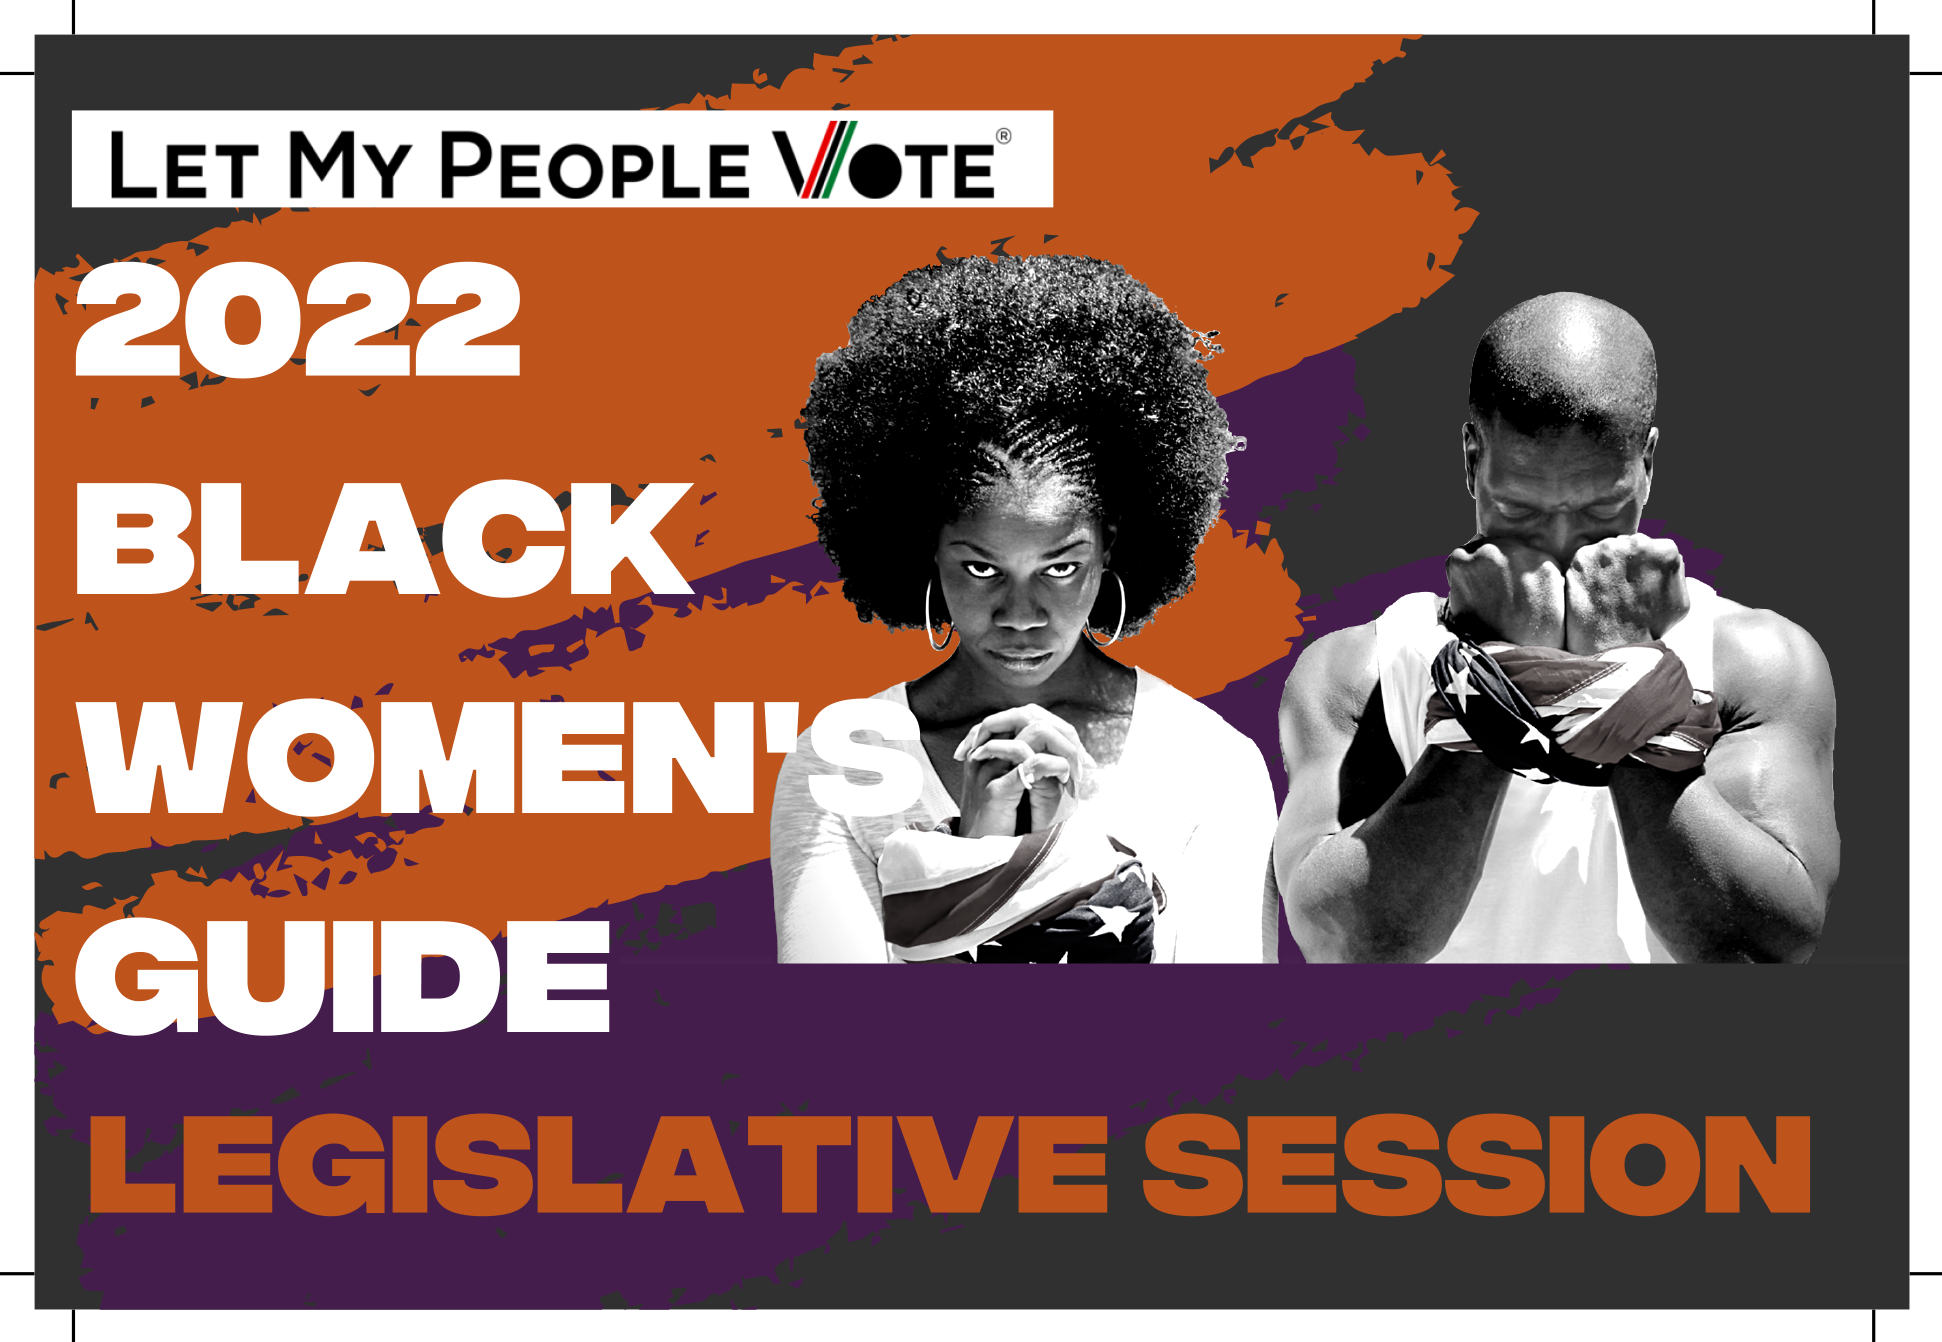 2022 Black Women's Voter Guide Legislative Session